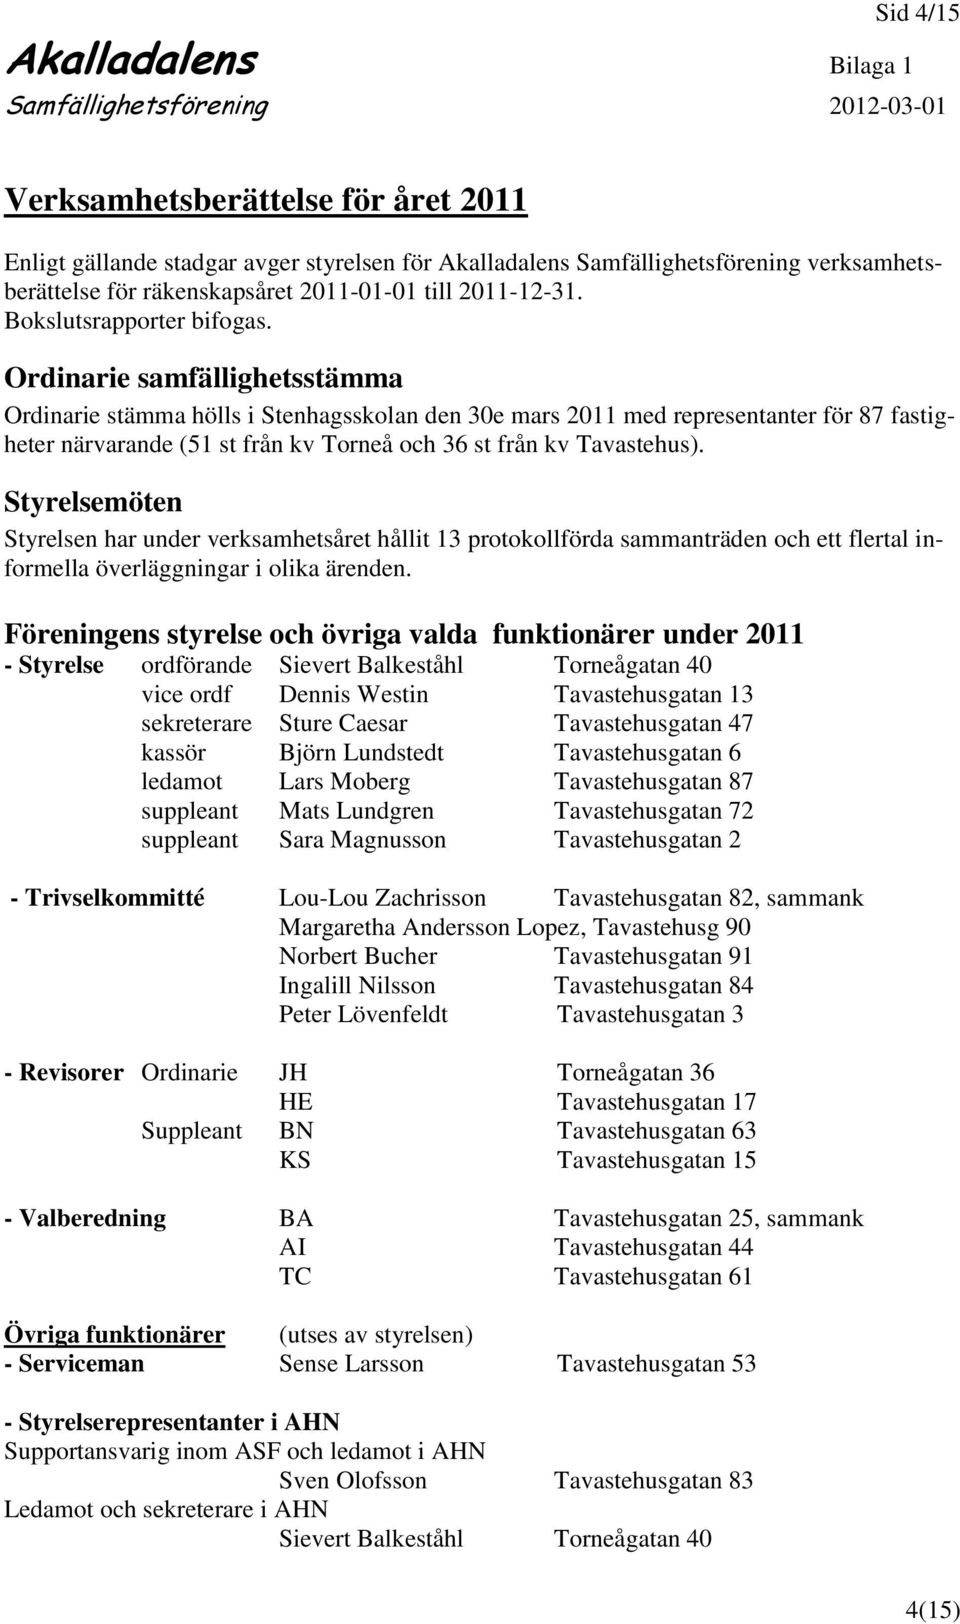 Ordinarie samfällighetsstämma Ordinarie stämma hölls i Stenhagsskolan den 30e mars 2011 med representanter för 87 fastigheter närvarande (51 st från kv Torneå och 36 st från kv Tavastehus).